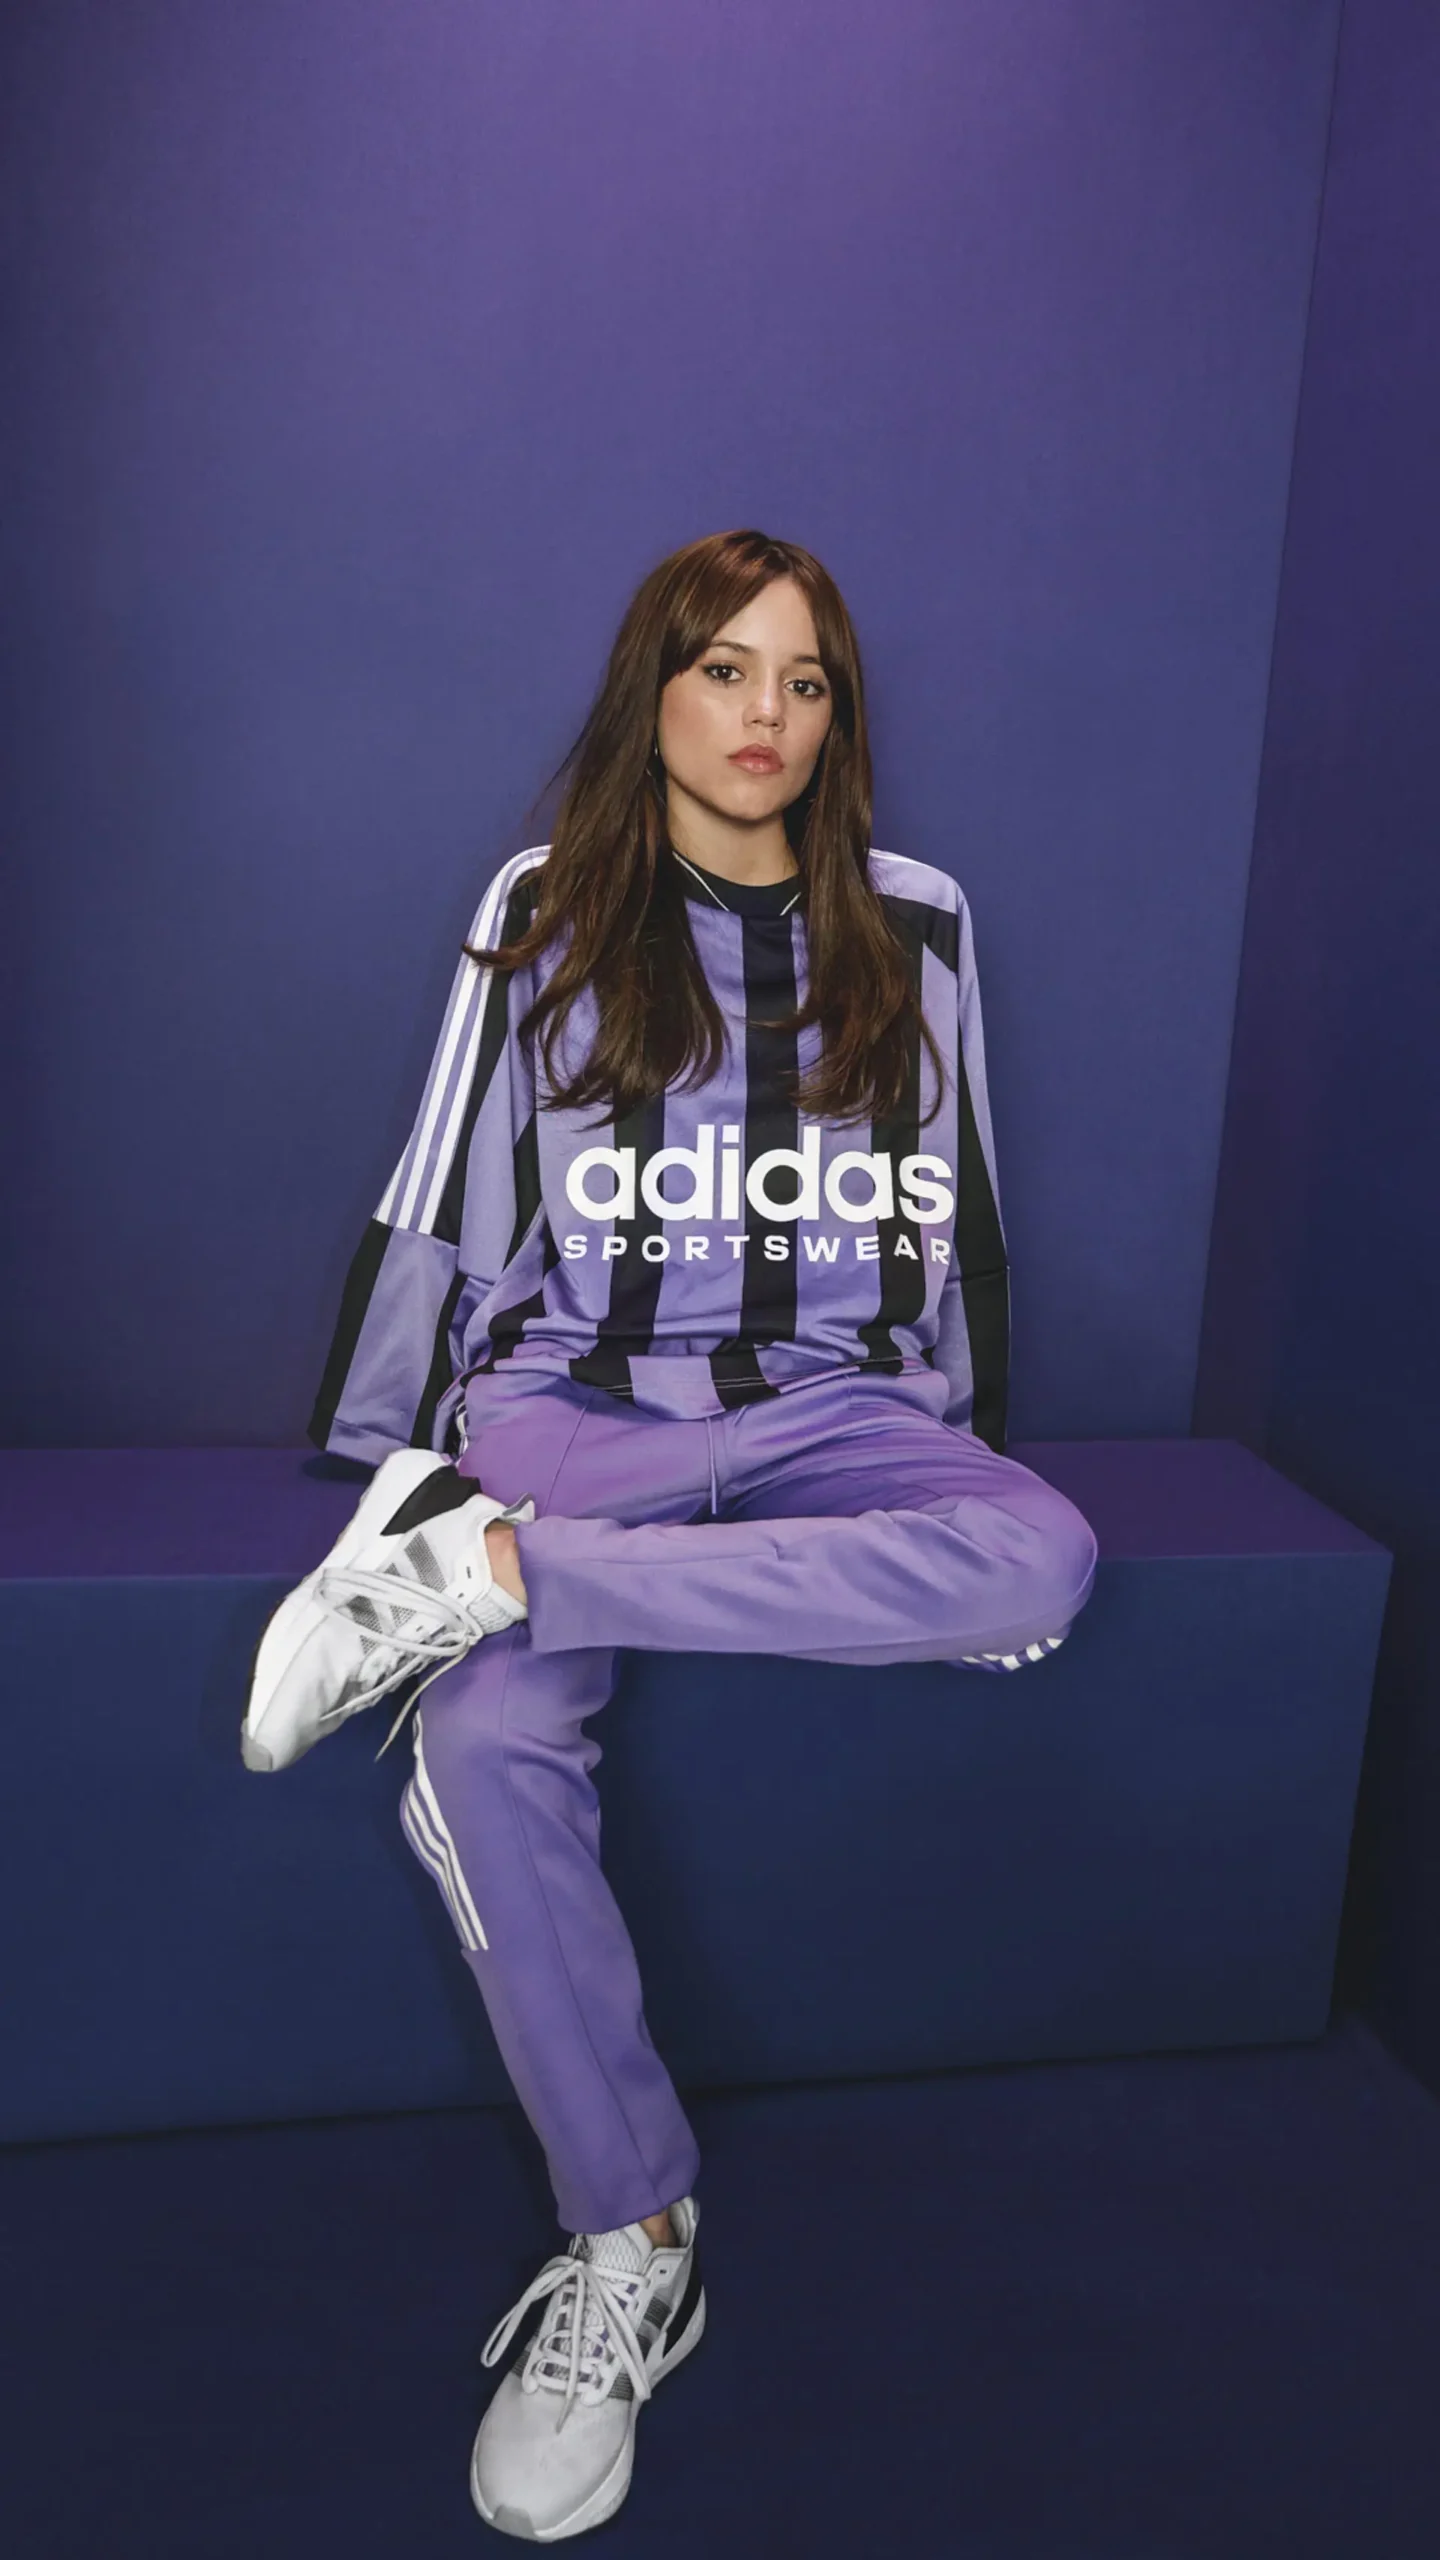 La actriz, productora e icono de estilo Jenna Ortega se une a la familia Adidas